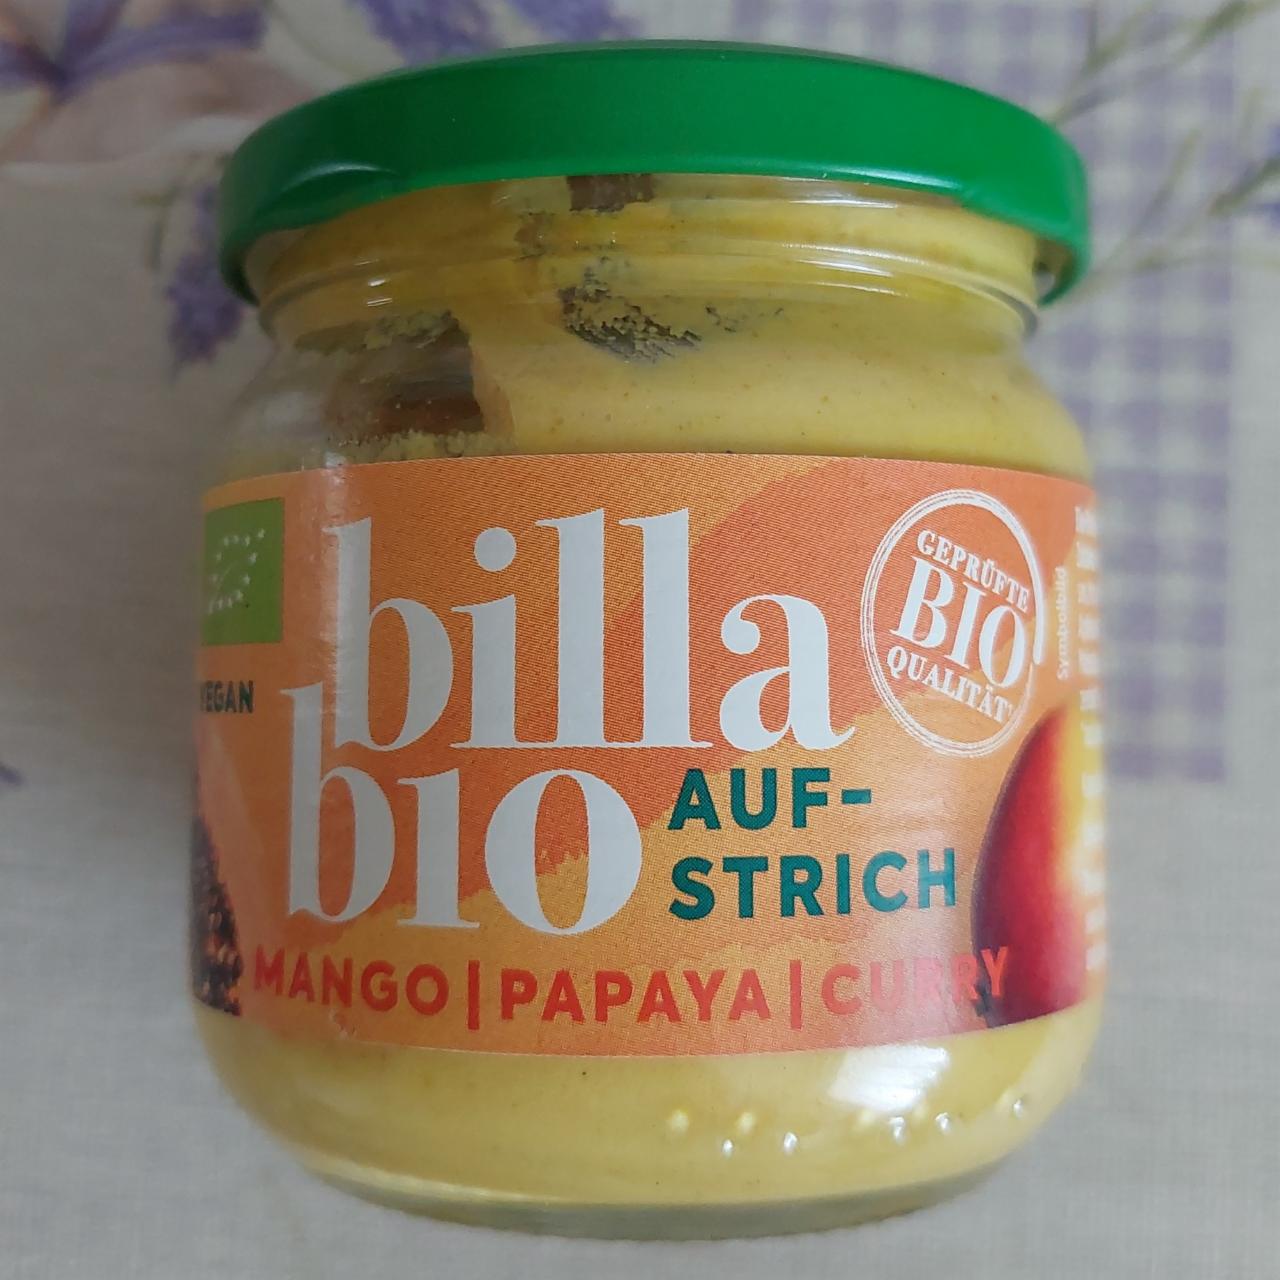 Fotografie - Aufstrich mango papaya curry Billa bio